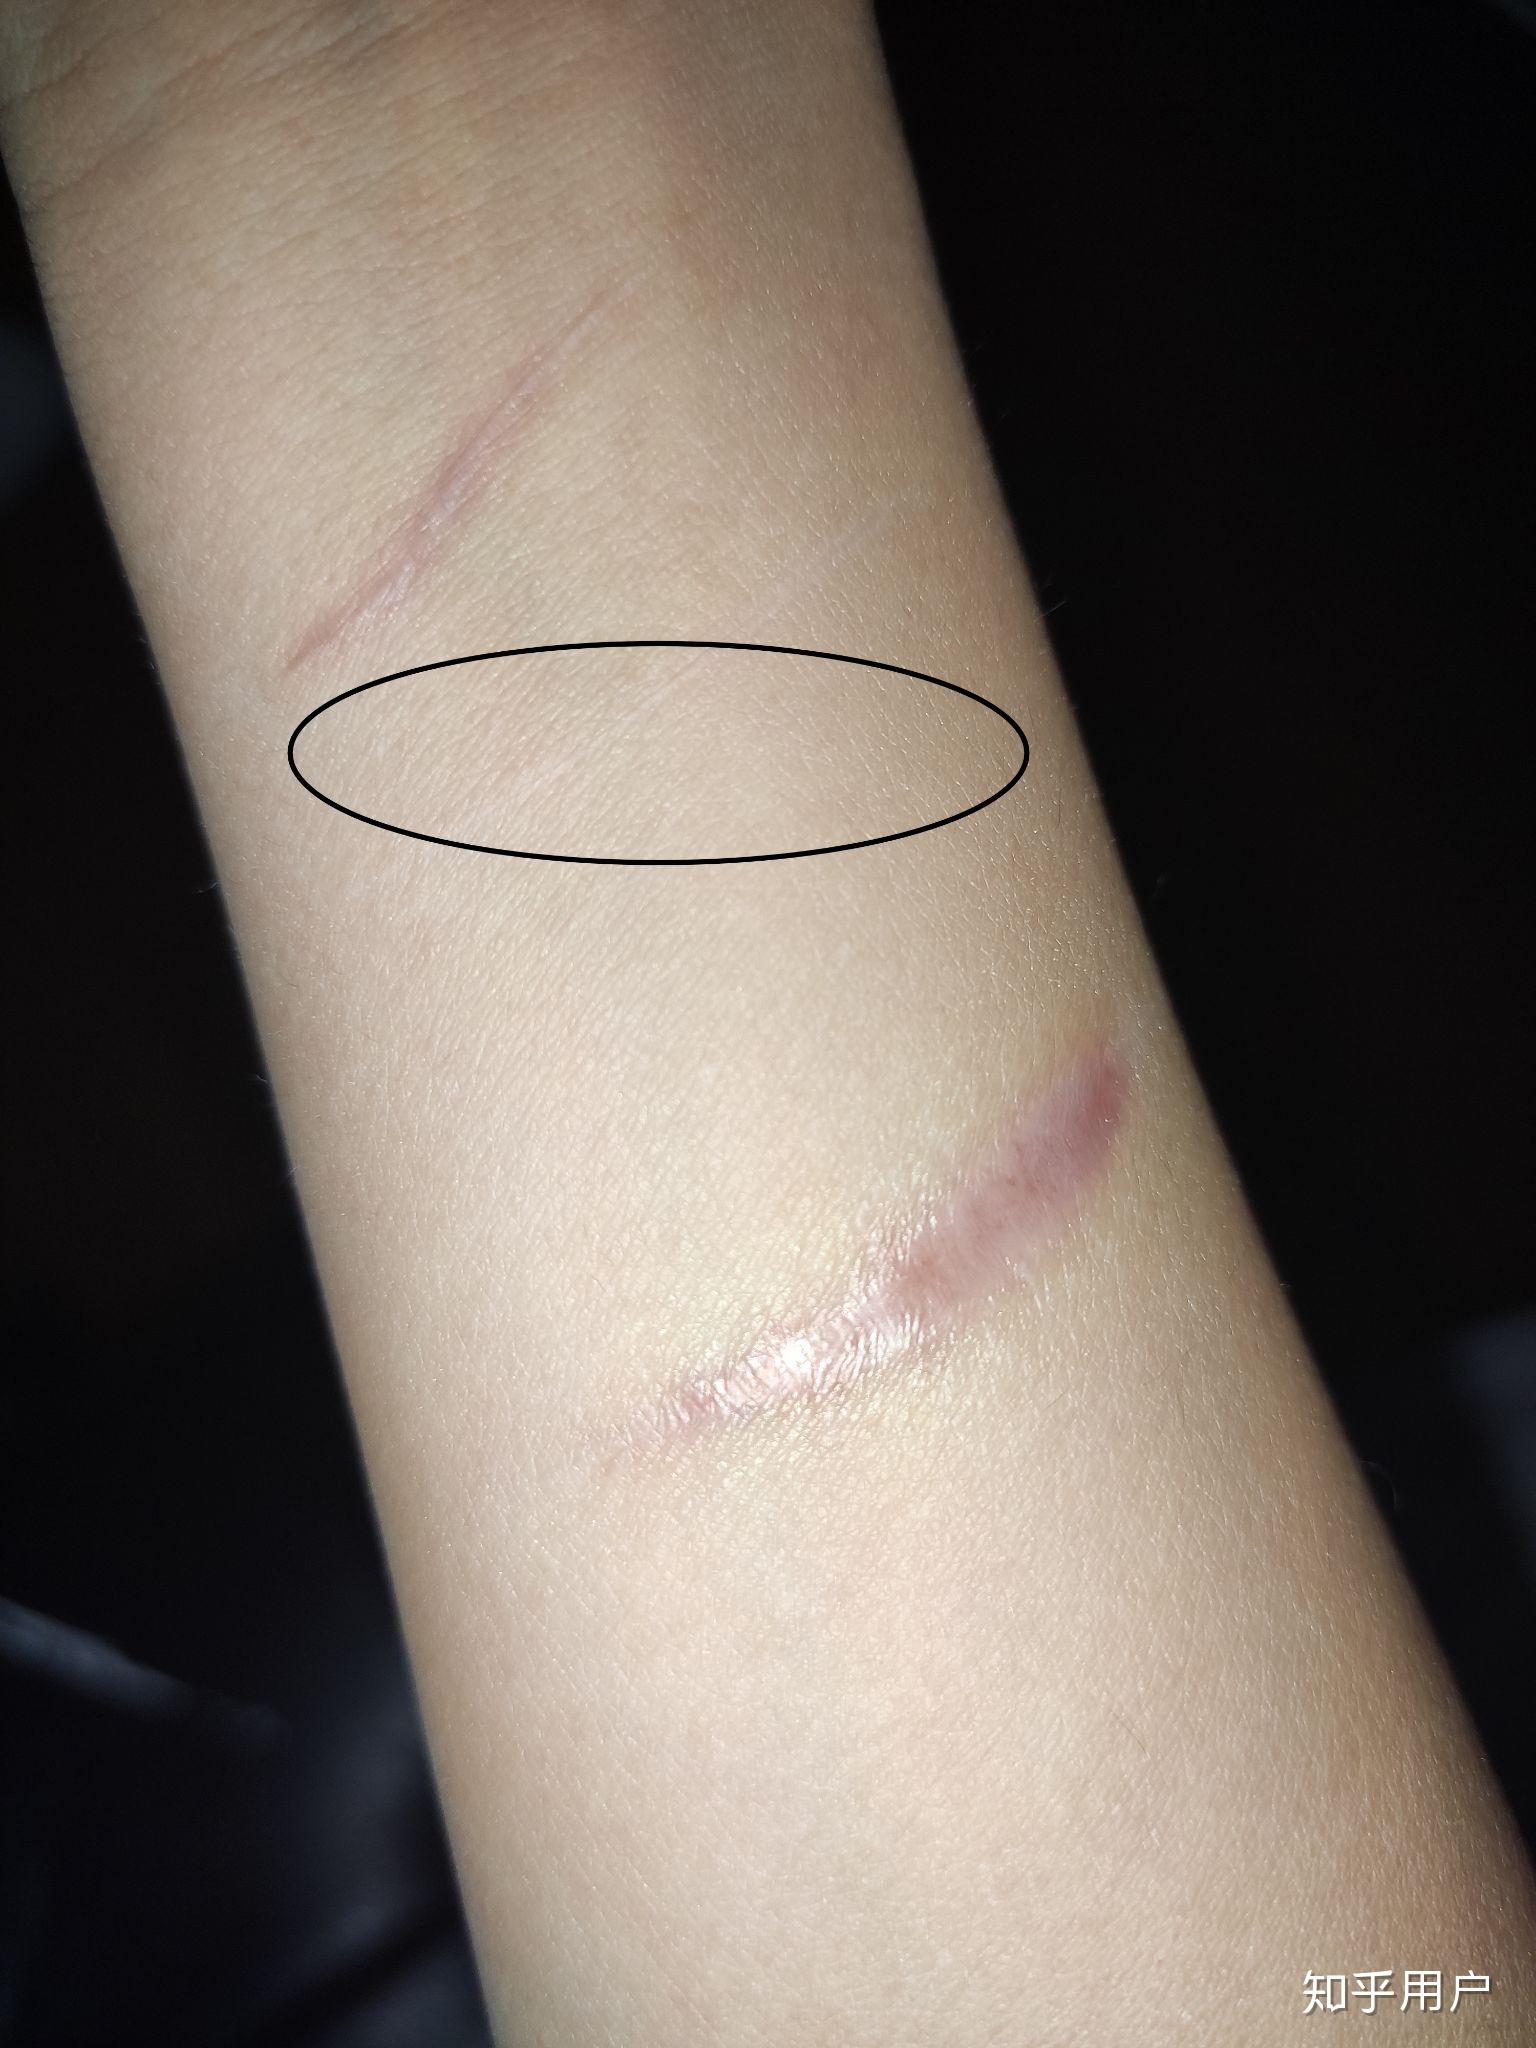 割腕的疤可以去掉吗